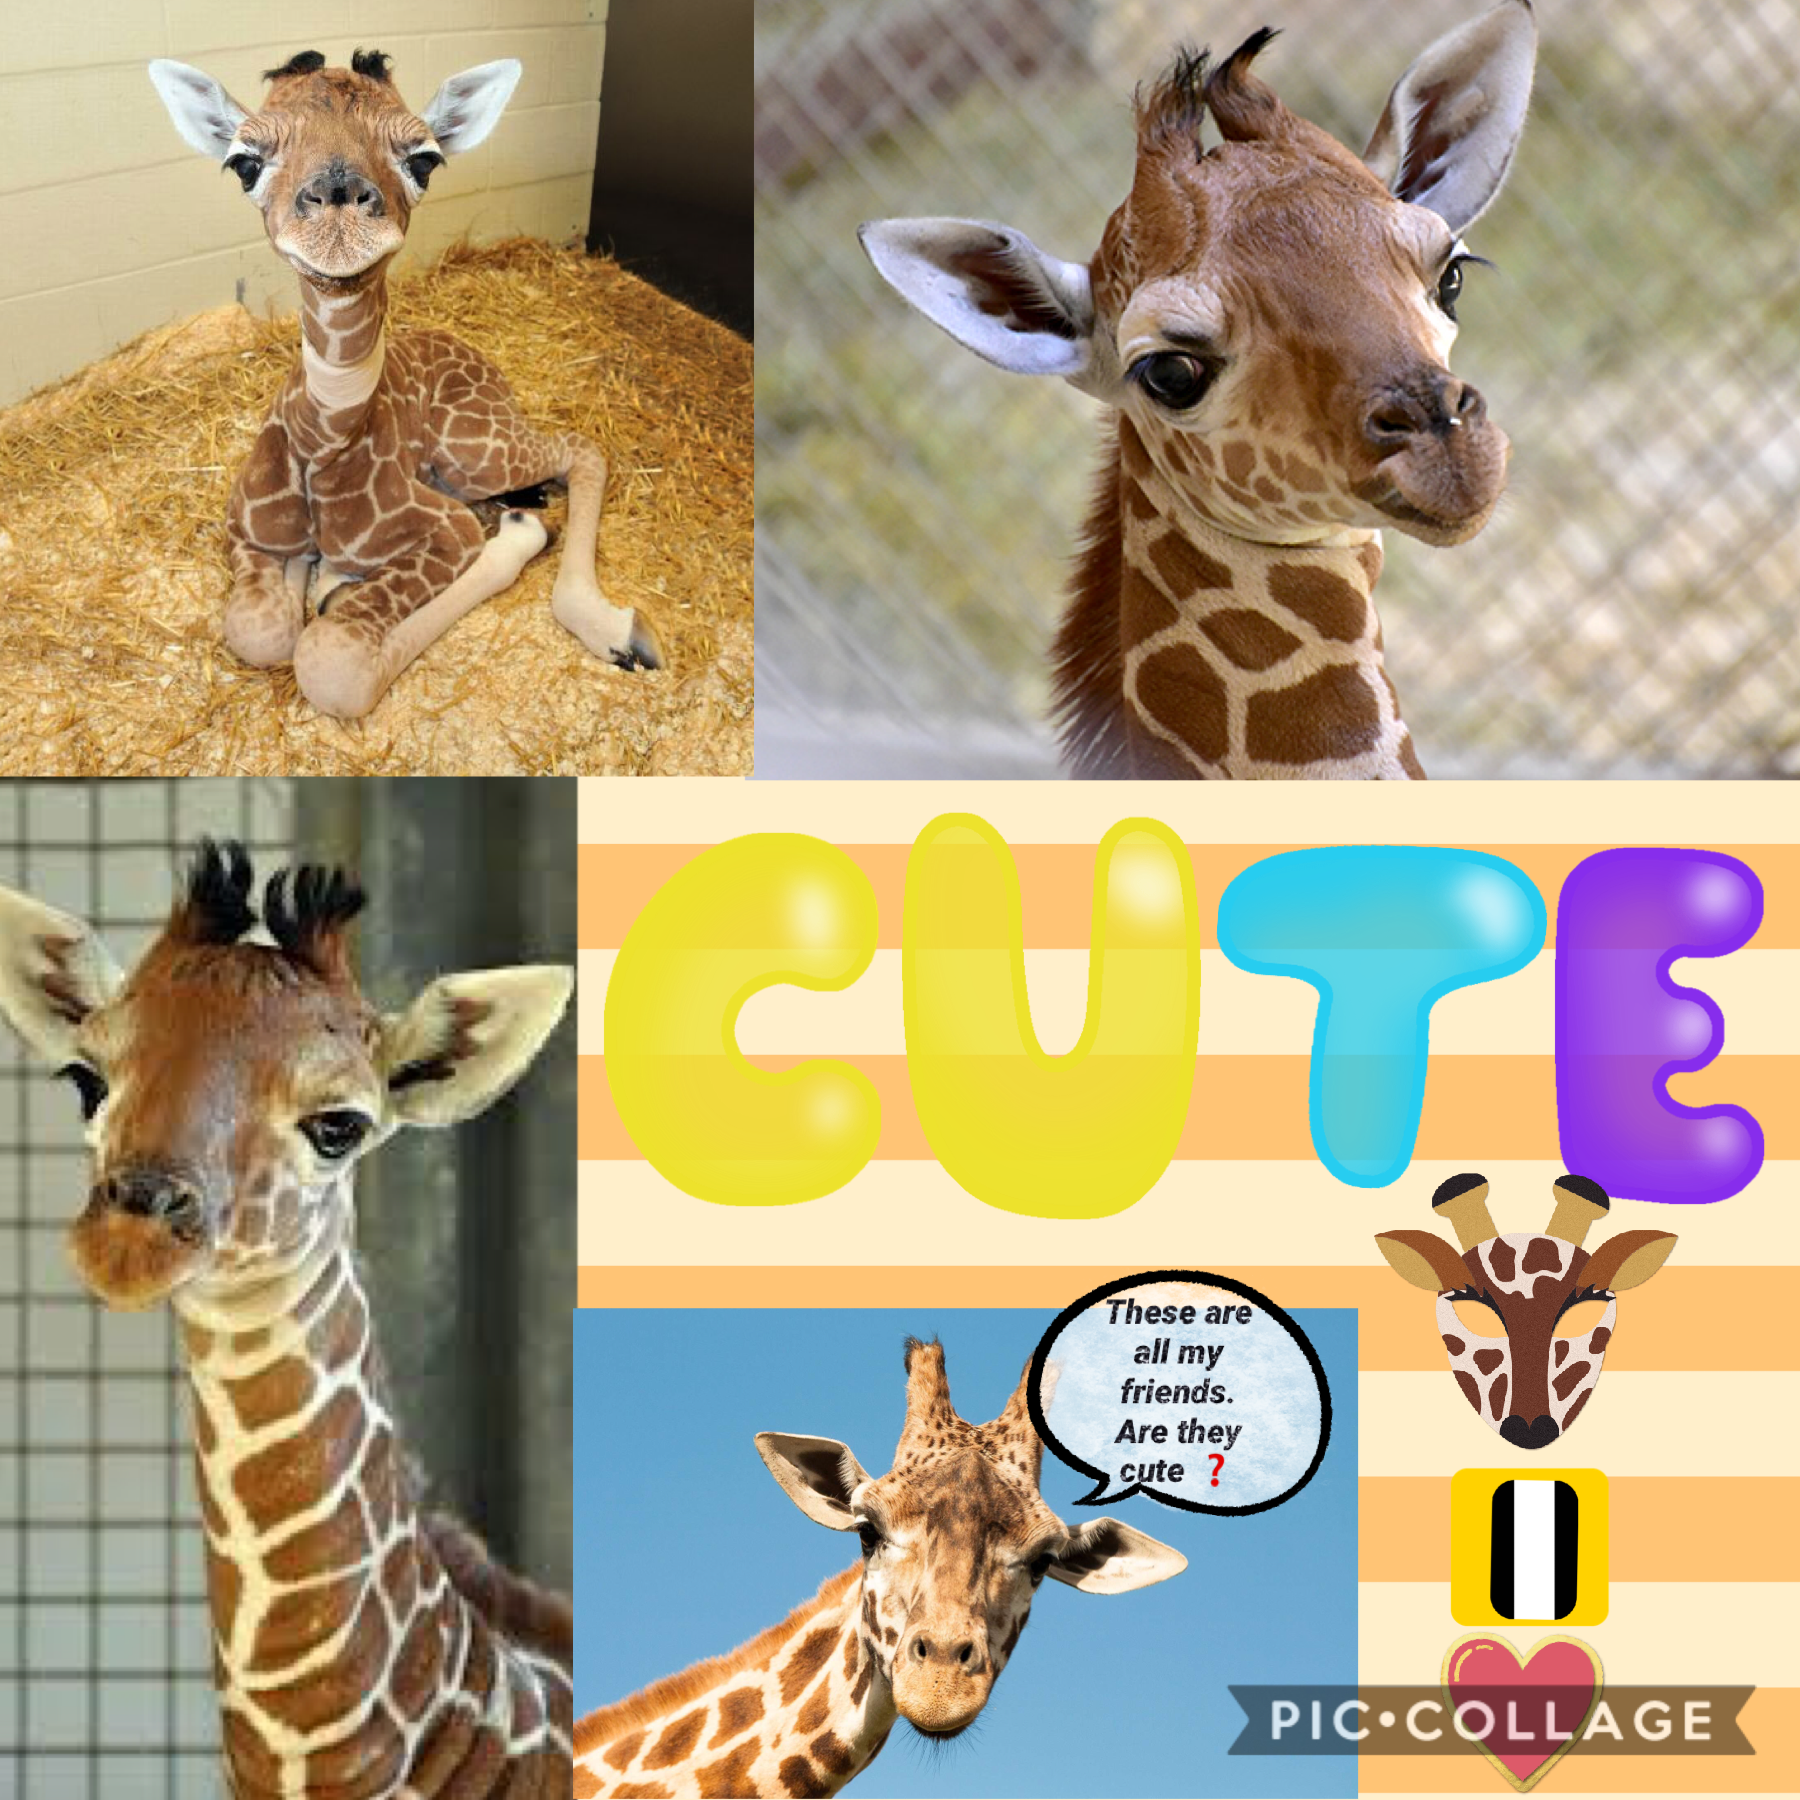 Too cute giraffes 🦒 